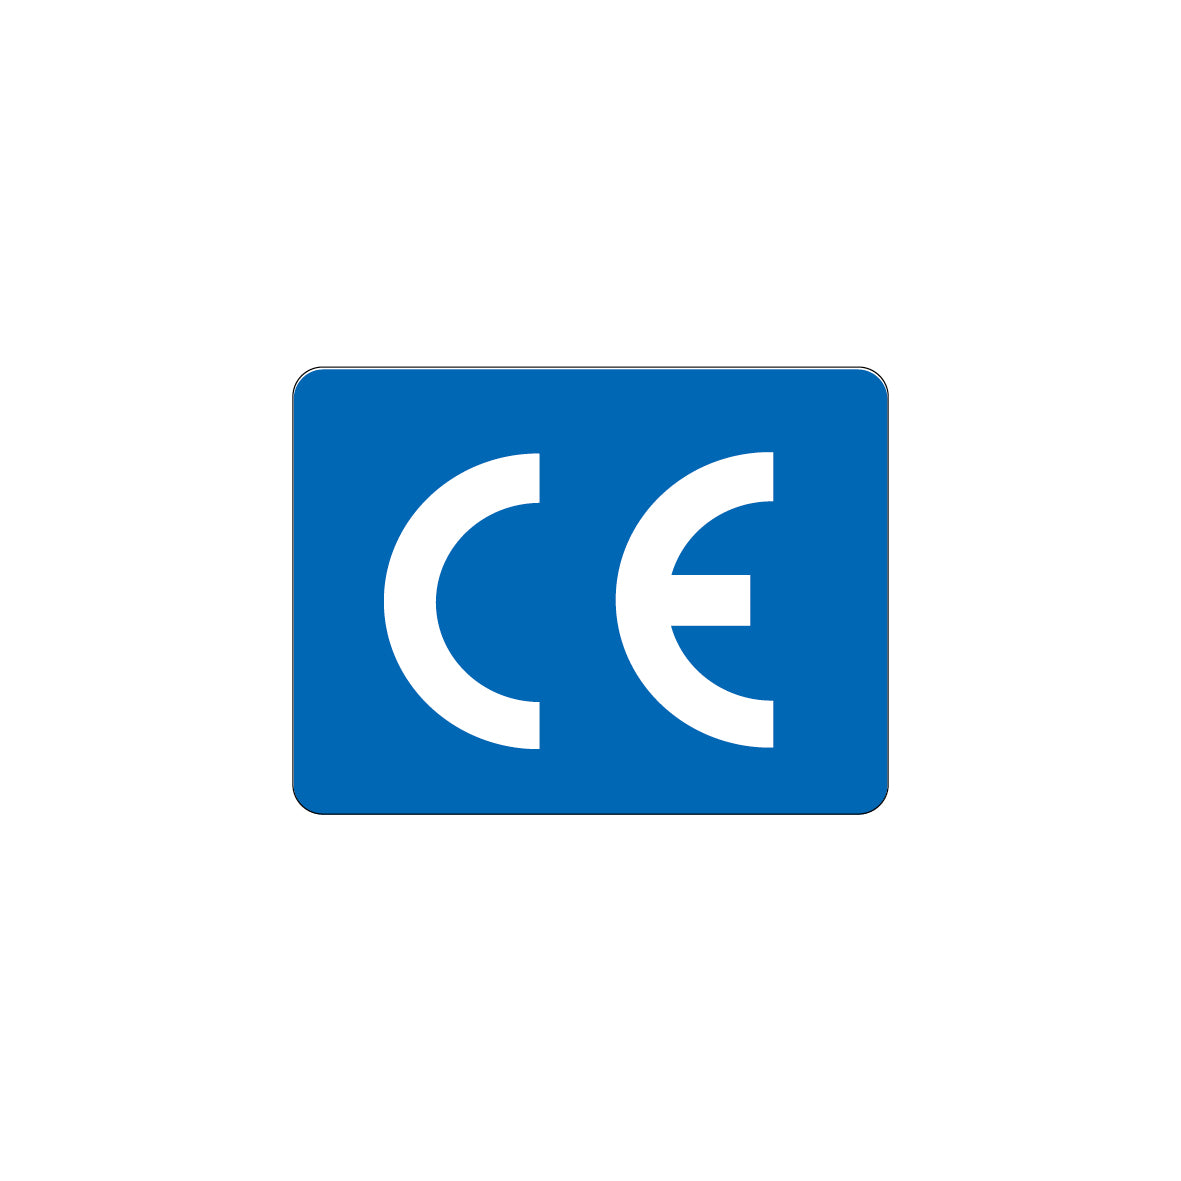 CE-Zeichen, 4.0061, 45 x 35 mm, Schrifthöhe 30 mm, FO, auf Bogen = 25 Stk., blau/weiss, Einheit 100 Stk.